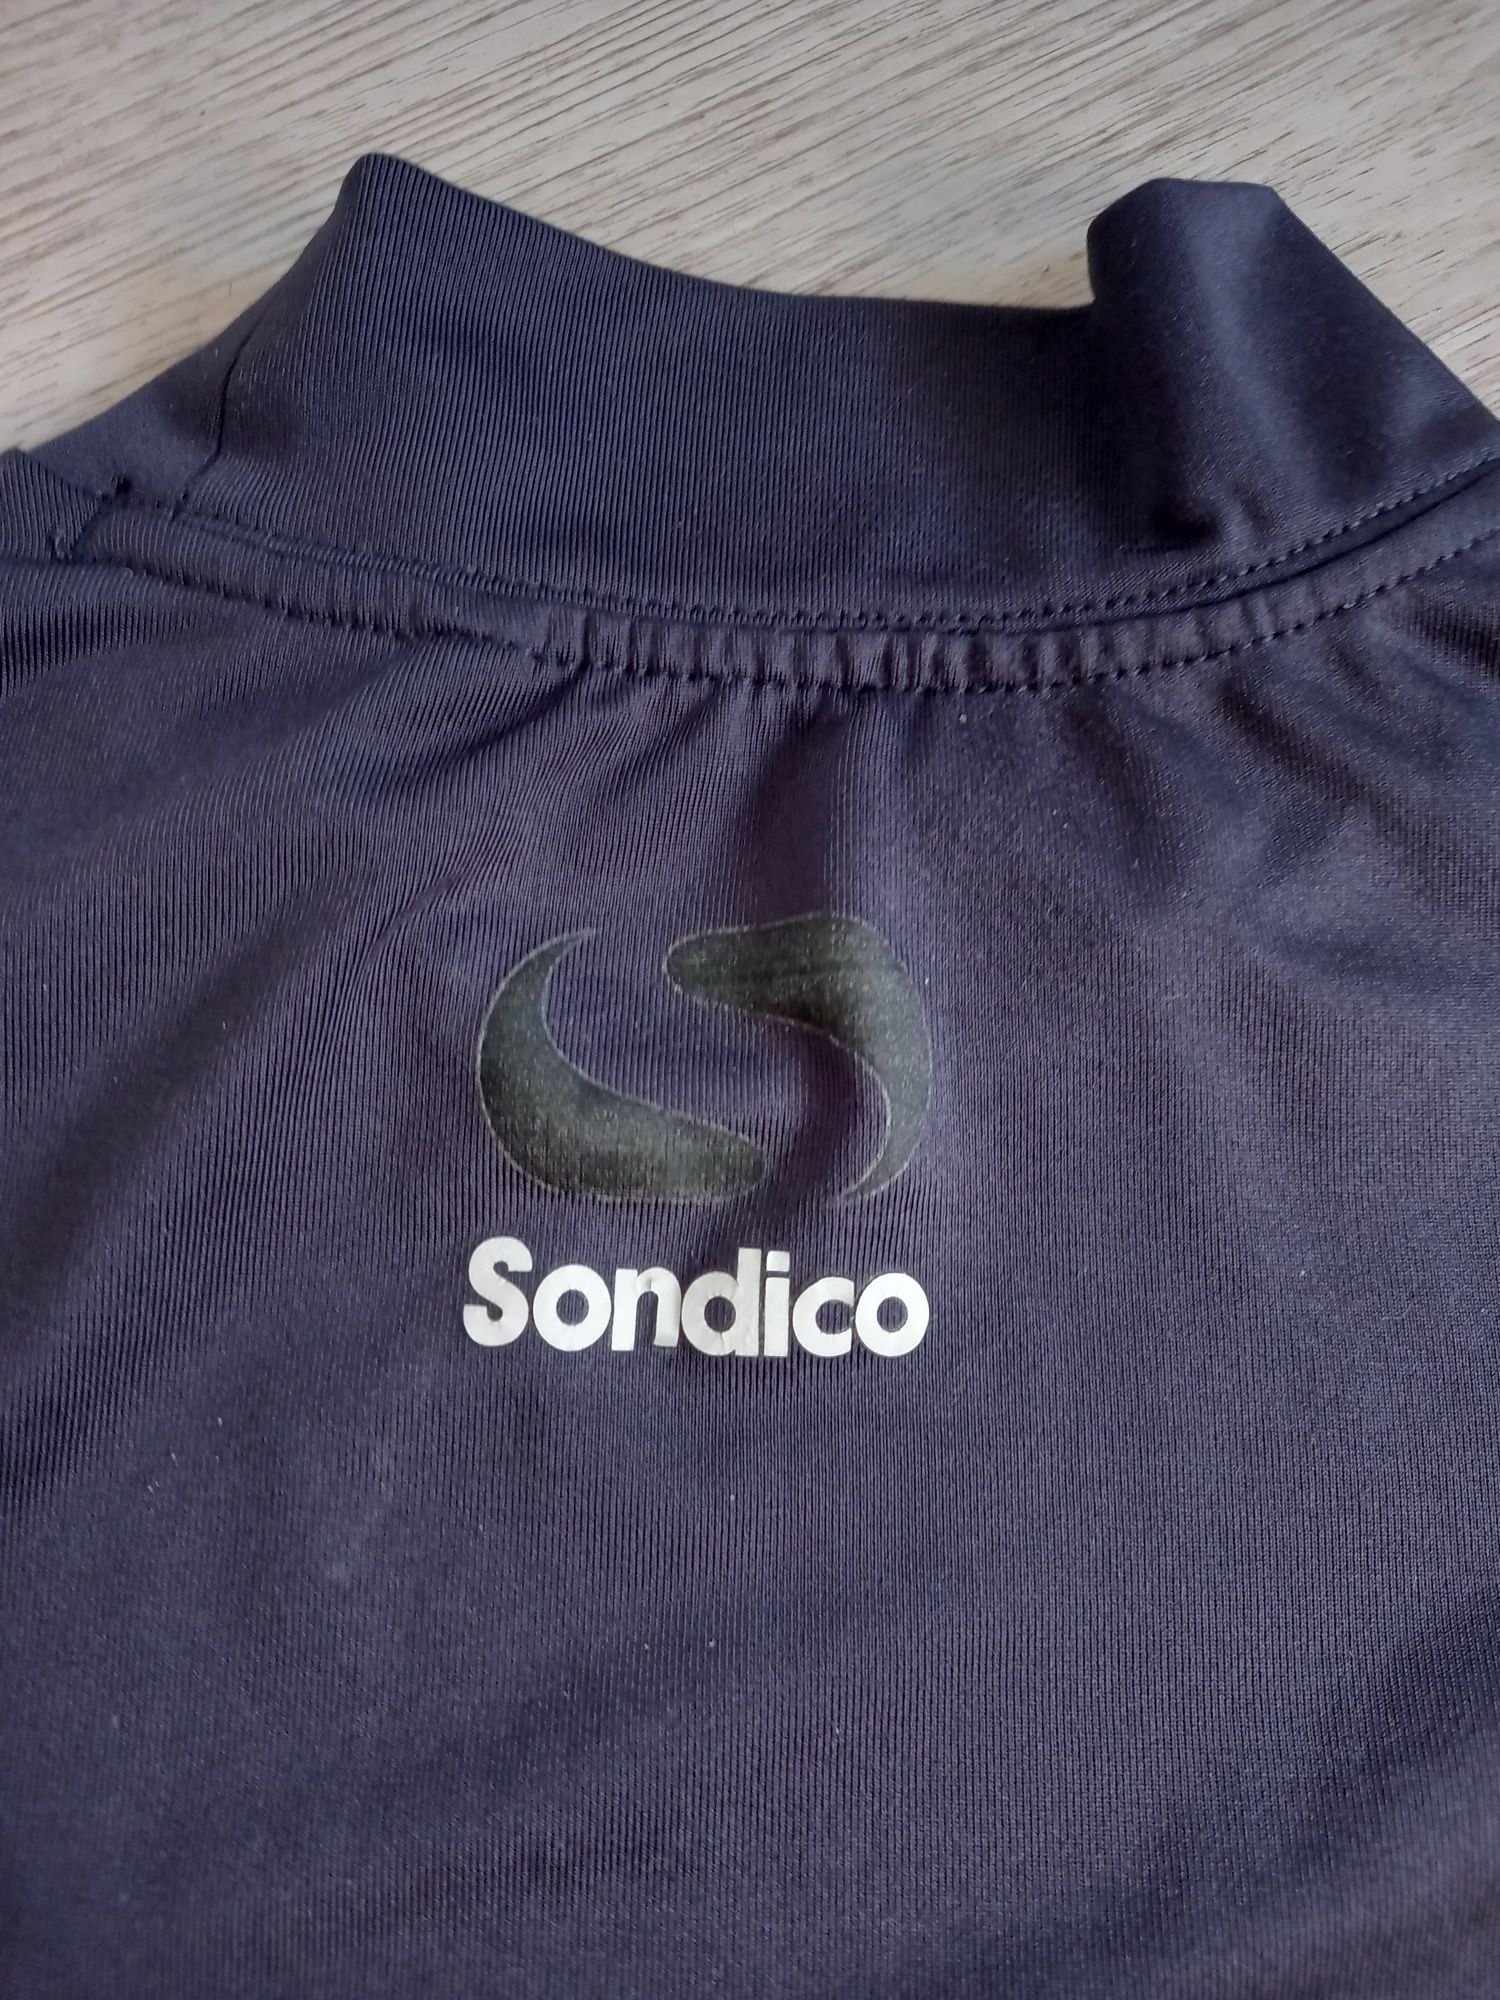 Sondico męska koszulka termoaktywna treningowa